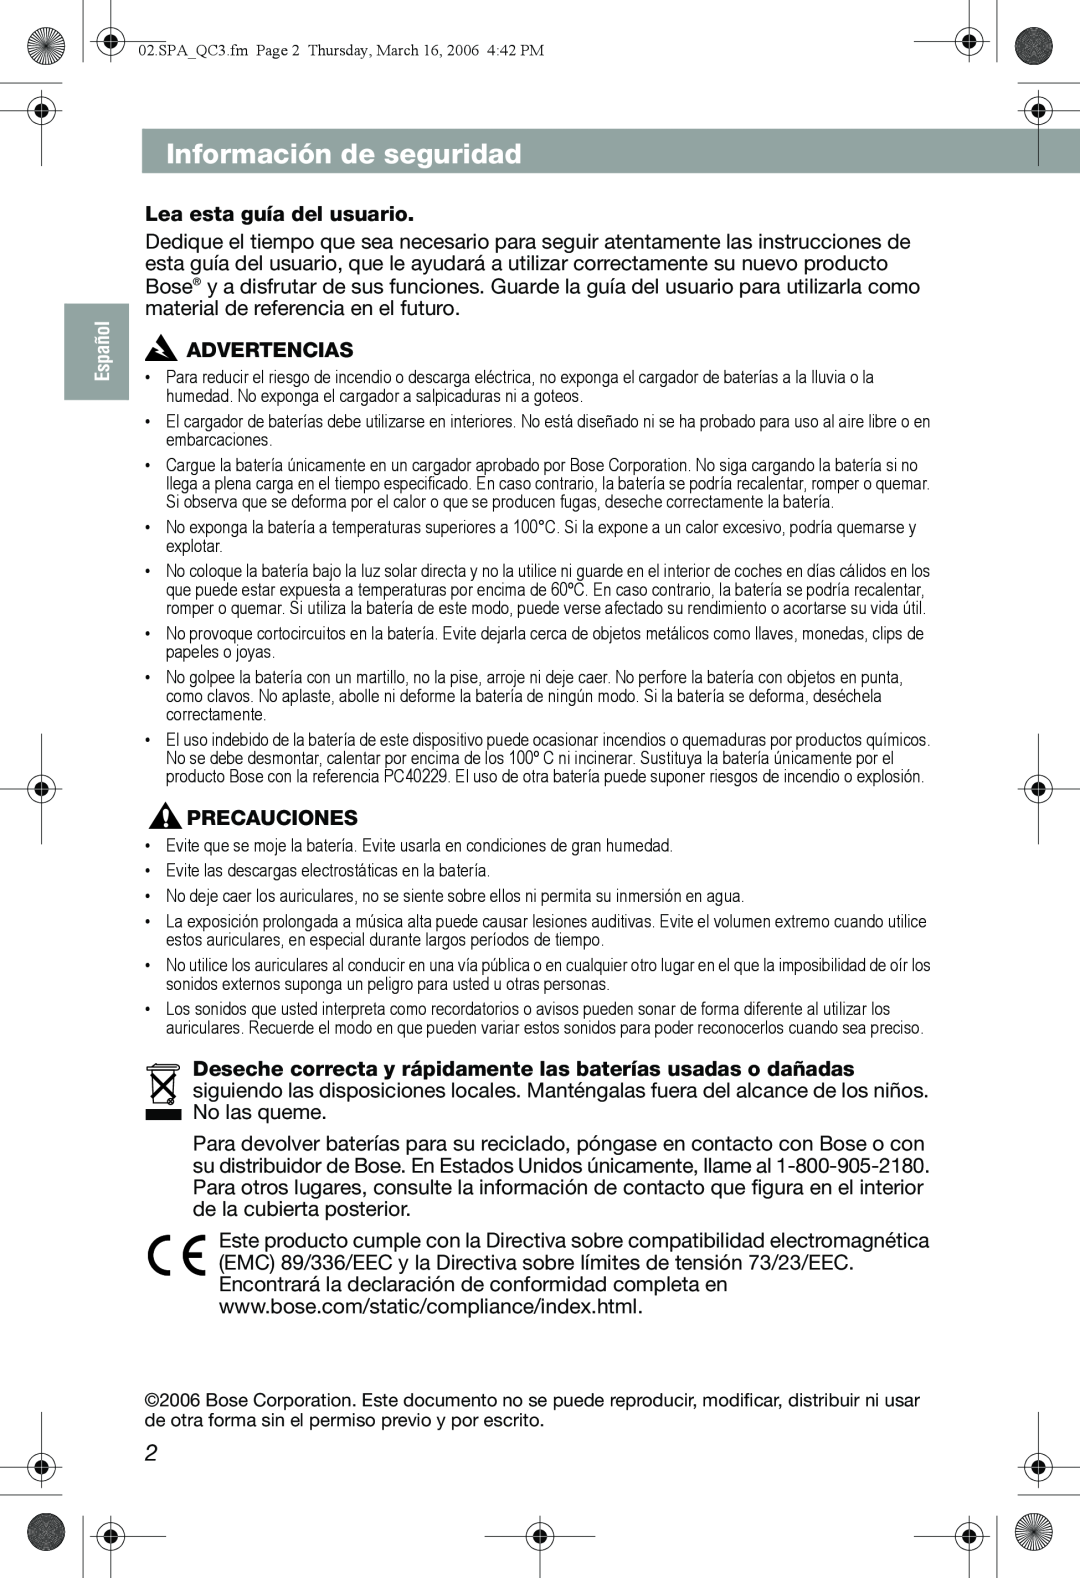 Bose QuietComfort 3 manual Información de seguridad, Lea esta guía del usuario, Advertencias, Precauciones 